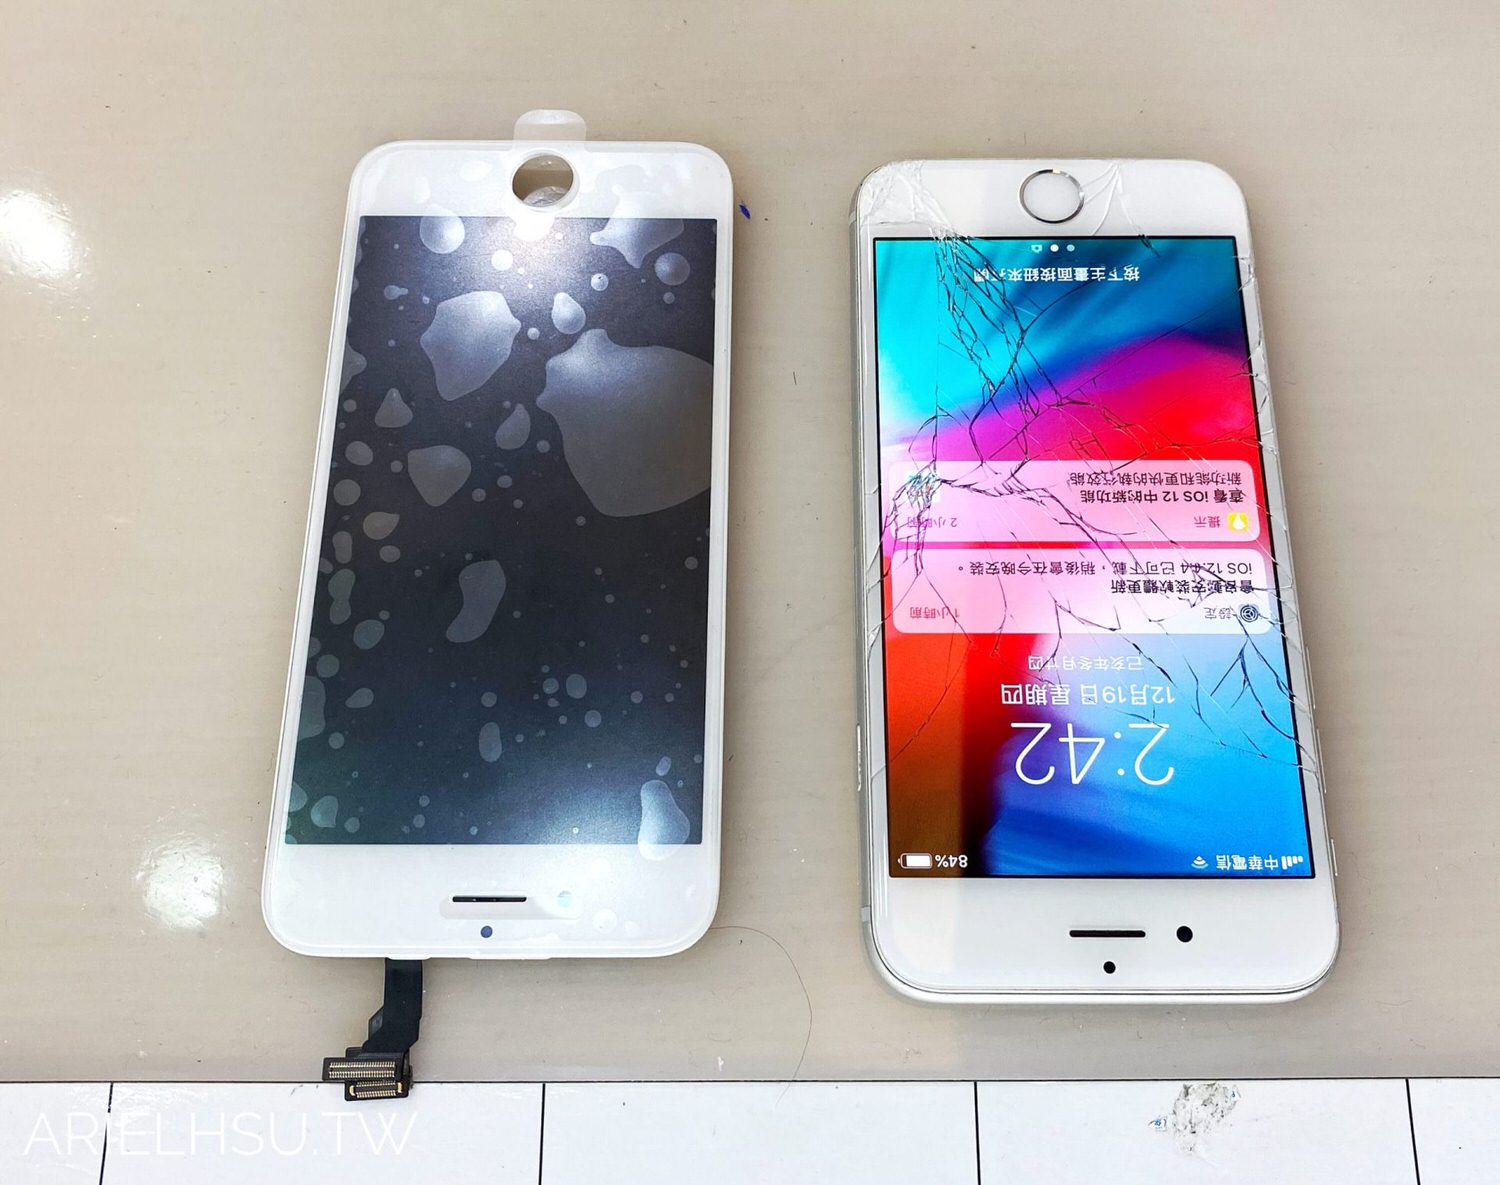 桃園iPhone維修推薦 【ProFix iPhone現場專業維修】換電池、螢幕破裂更換、主機板維修、濾藍光iPhone螢幕保護貼、郵寄送修 | 專業維修iPhone手機醫生 | 同步iPhone手機維修過程